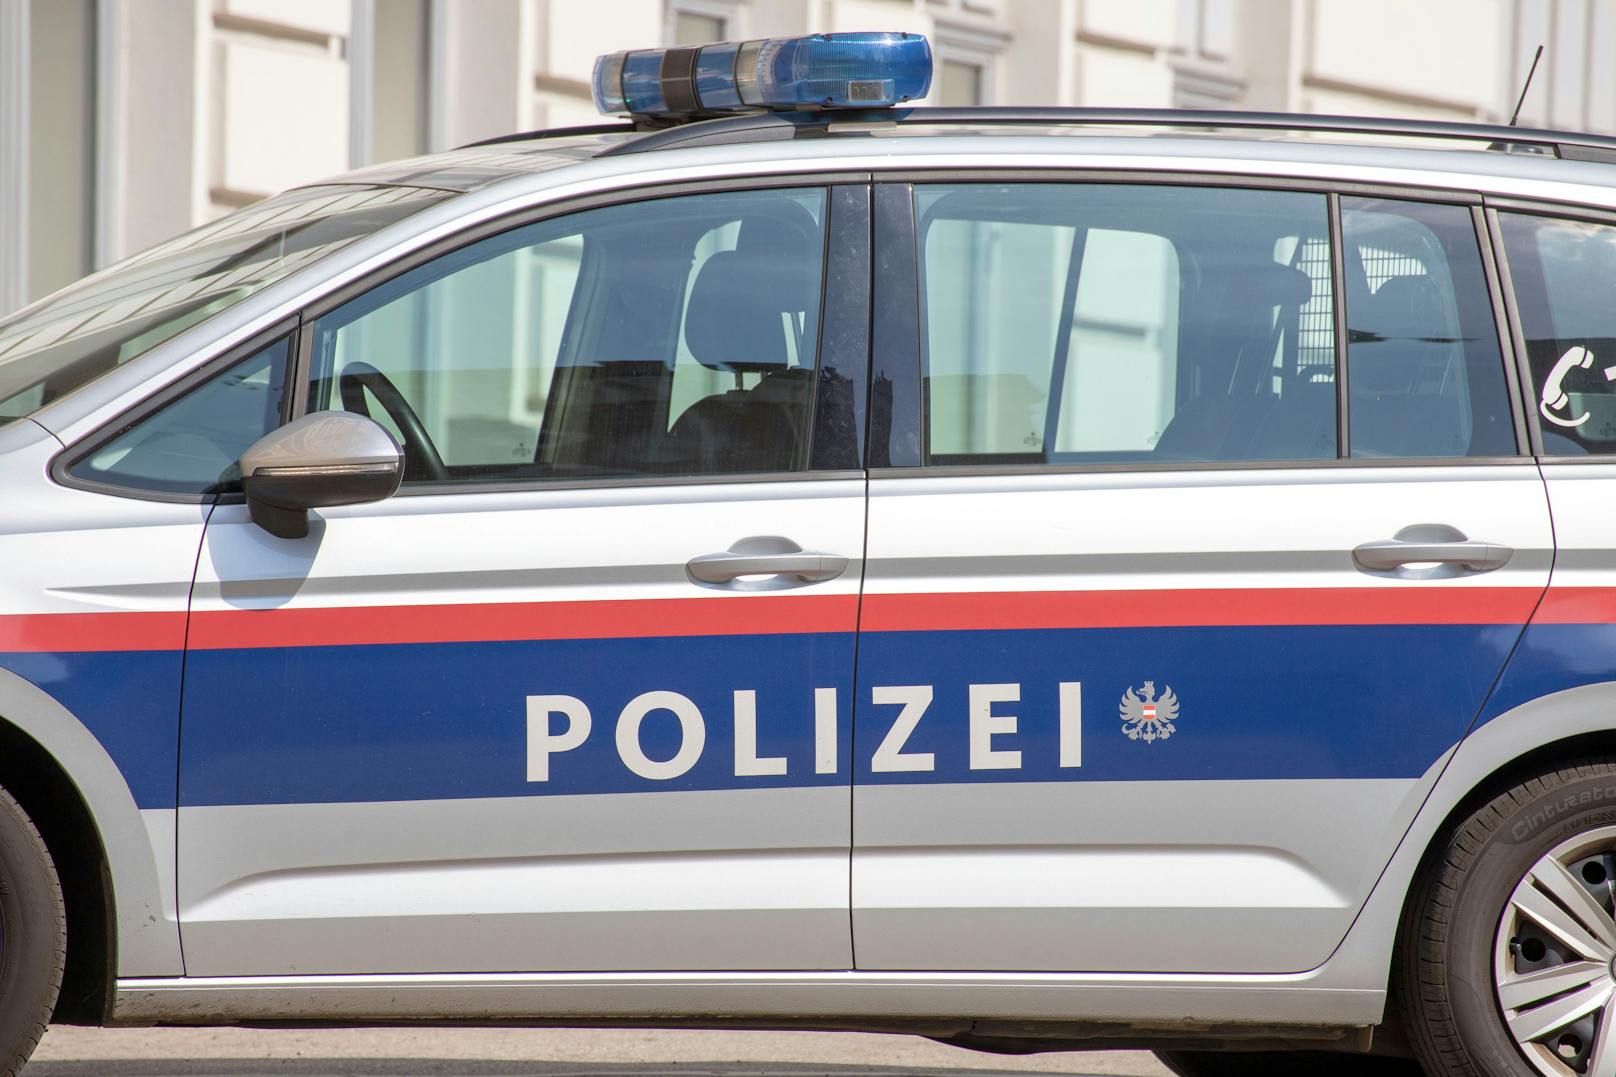 Zeugen entdecken niedergestochene Frau in Pkw bei Wien